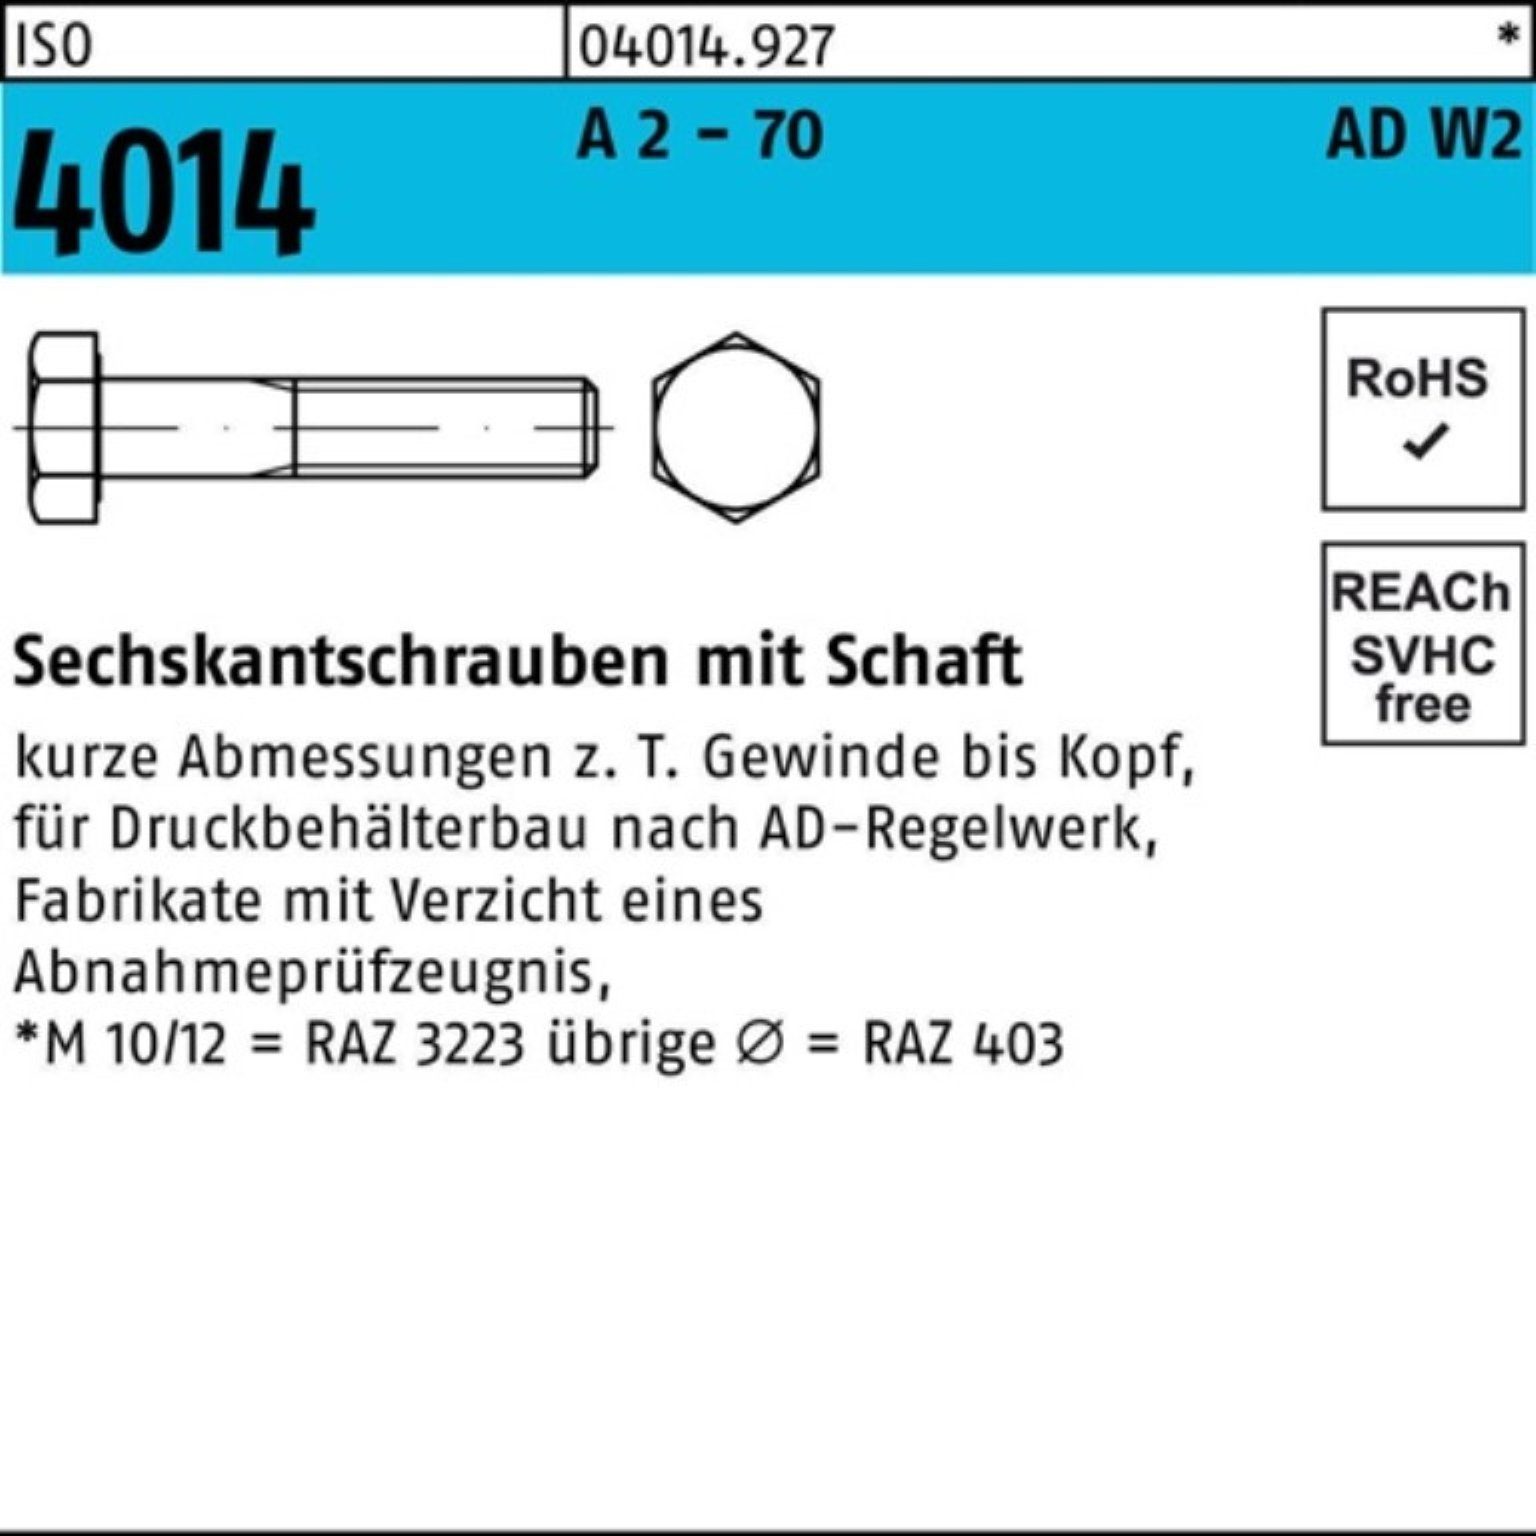 Bufab Sechskantschraube 100er Pack 4014 Sechskantschraube A 2 2 M20x AD-W2 - 70 ISO 100 Schaft